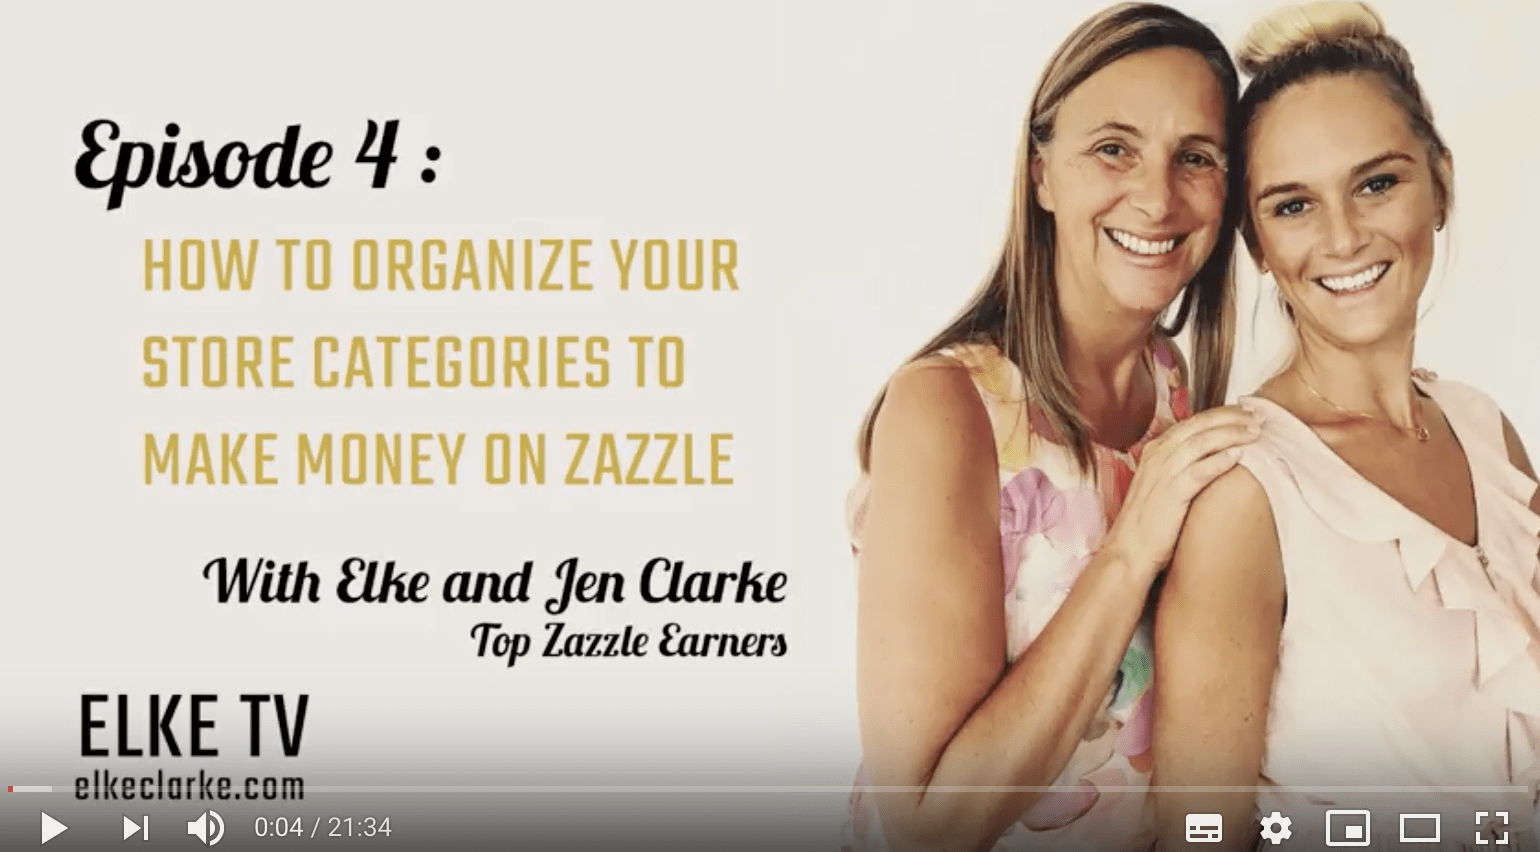 YouTube Video on Zazzle Store Categories by Elke Clarke and Jen Clarke